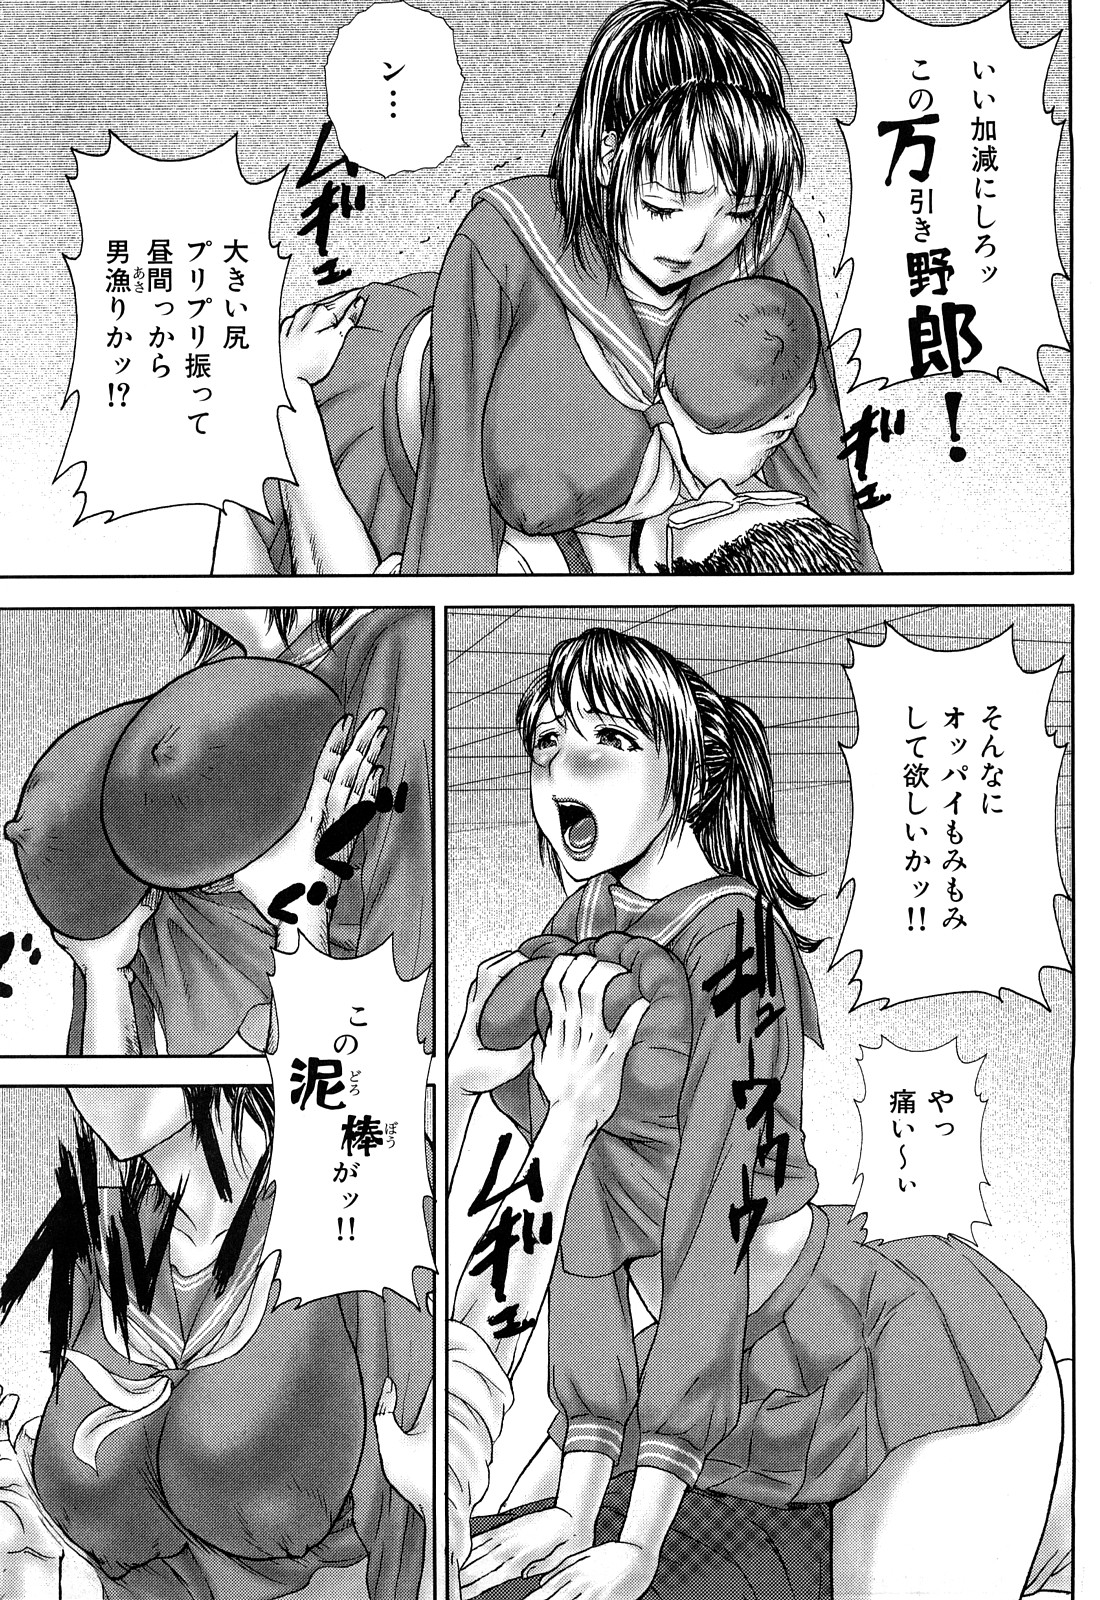 [EXTREME] Tsuma No Shizuku ~Nikuyome Miyuki 29 sai~ page 15 full